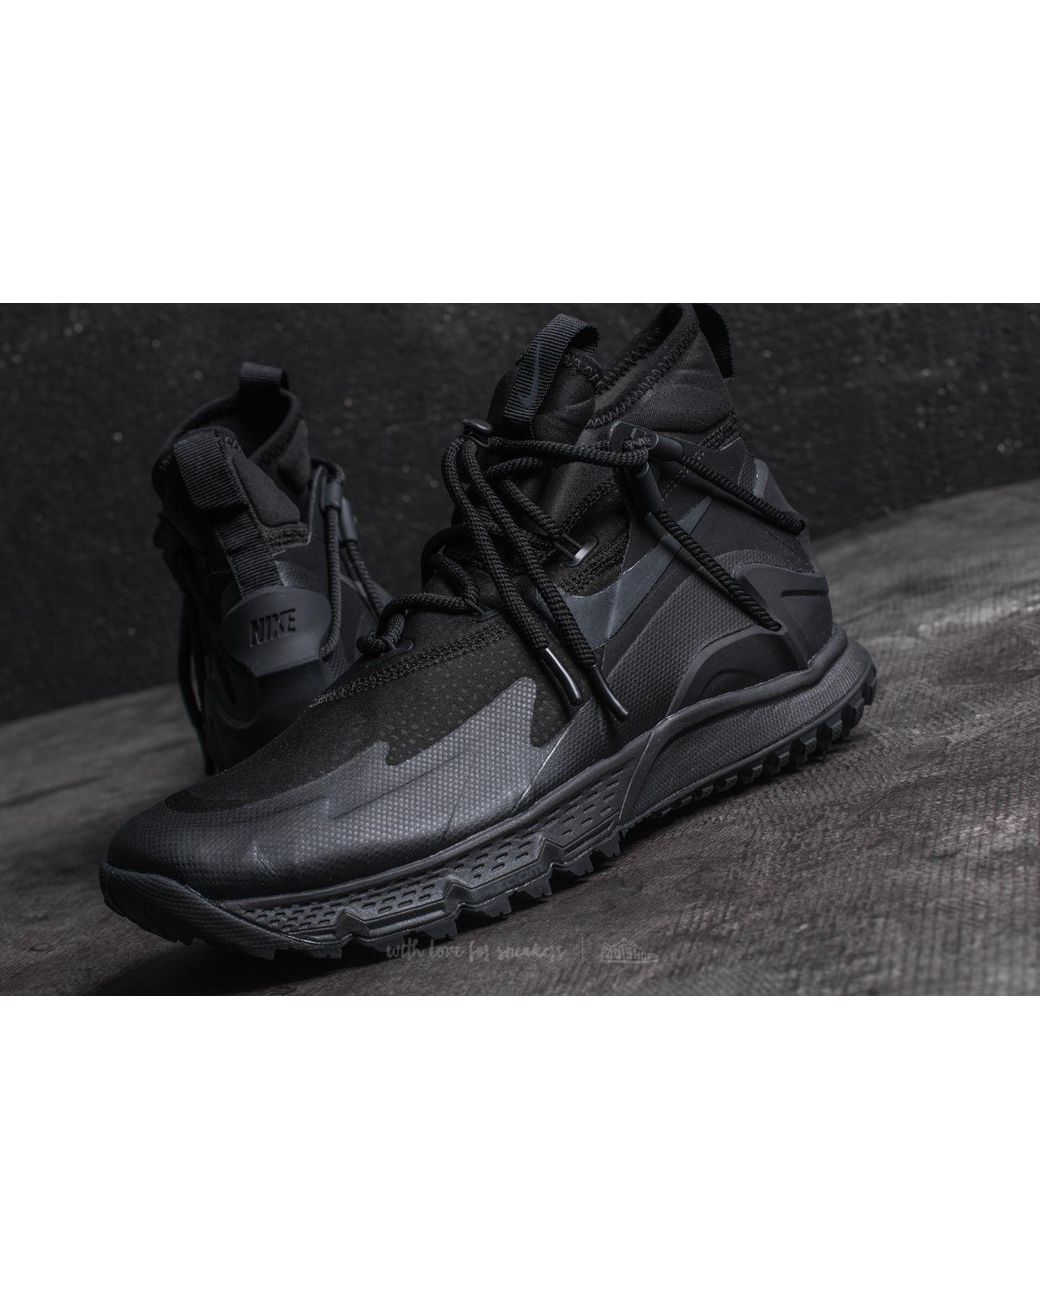 Nike Terra Sertig Boot Black/ Anthracite for Men | Lyst